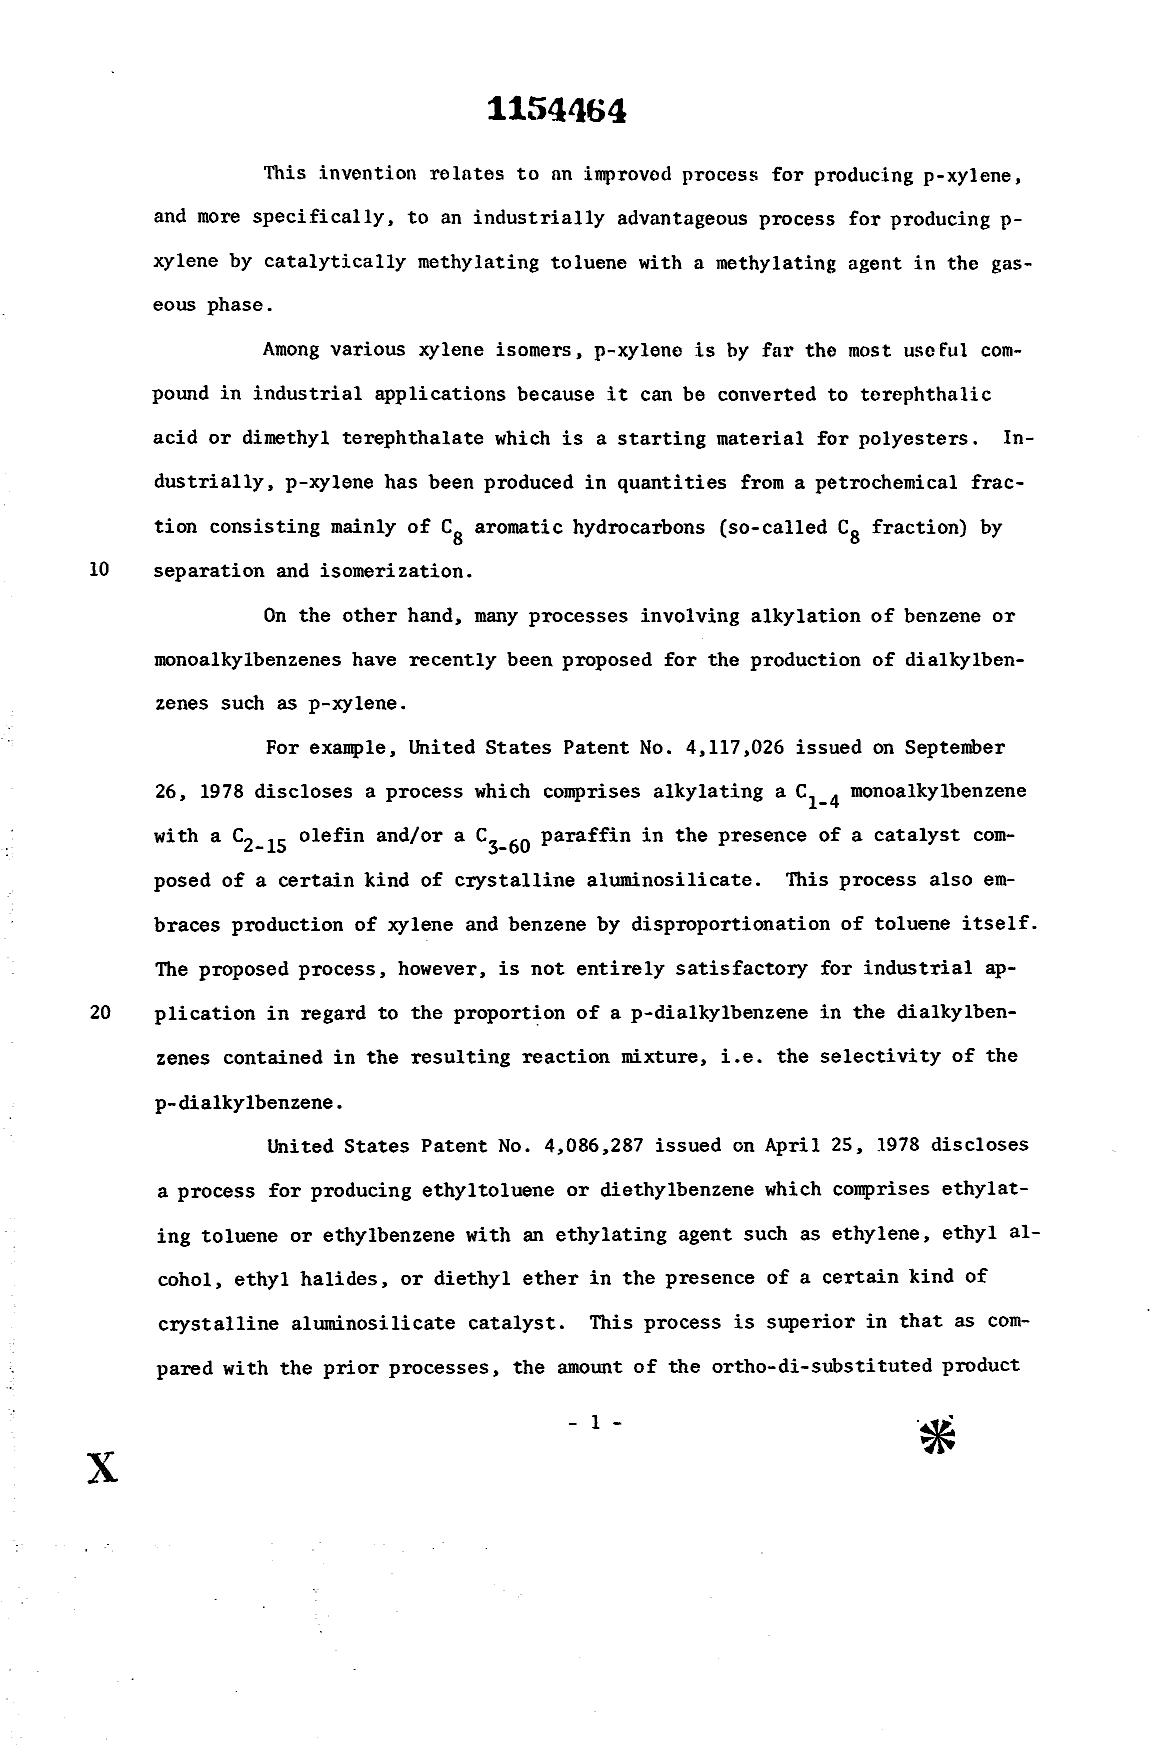 Canadian Patent Document 1154464. Description 19940124. Image 1 of 47